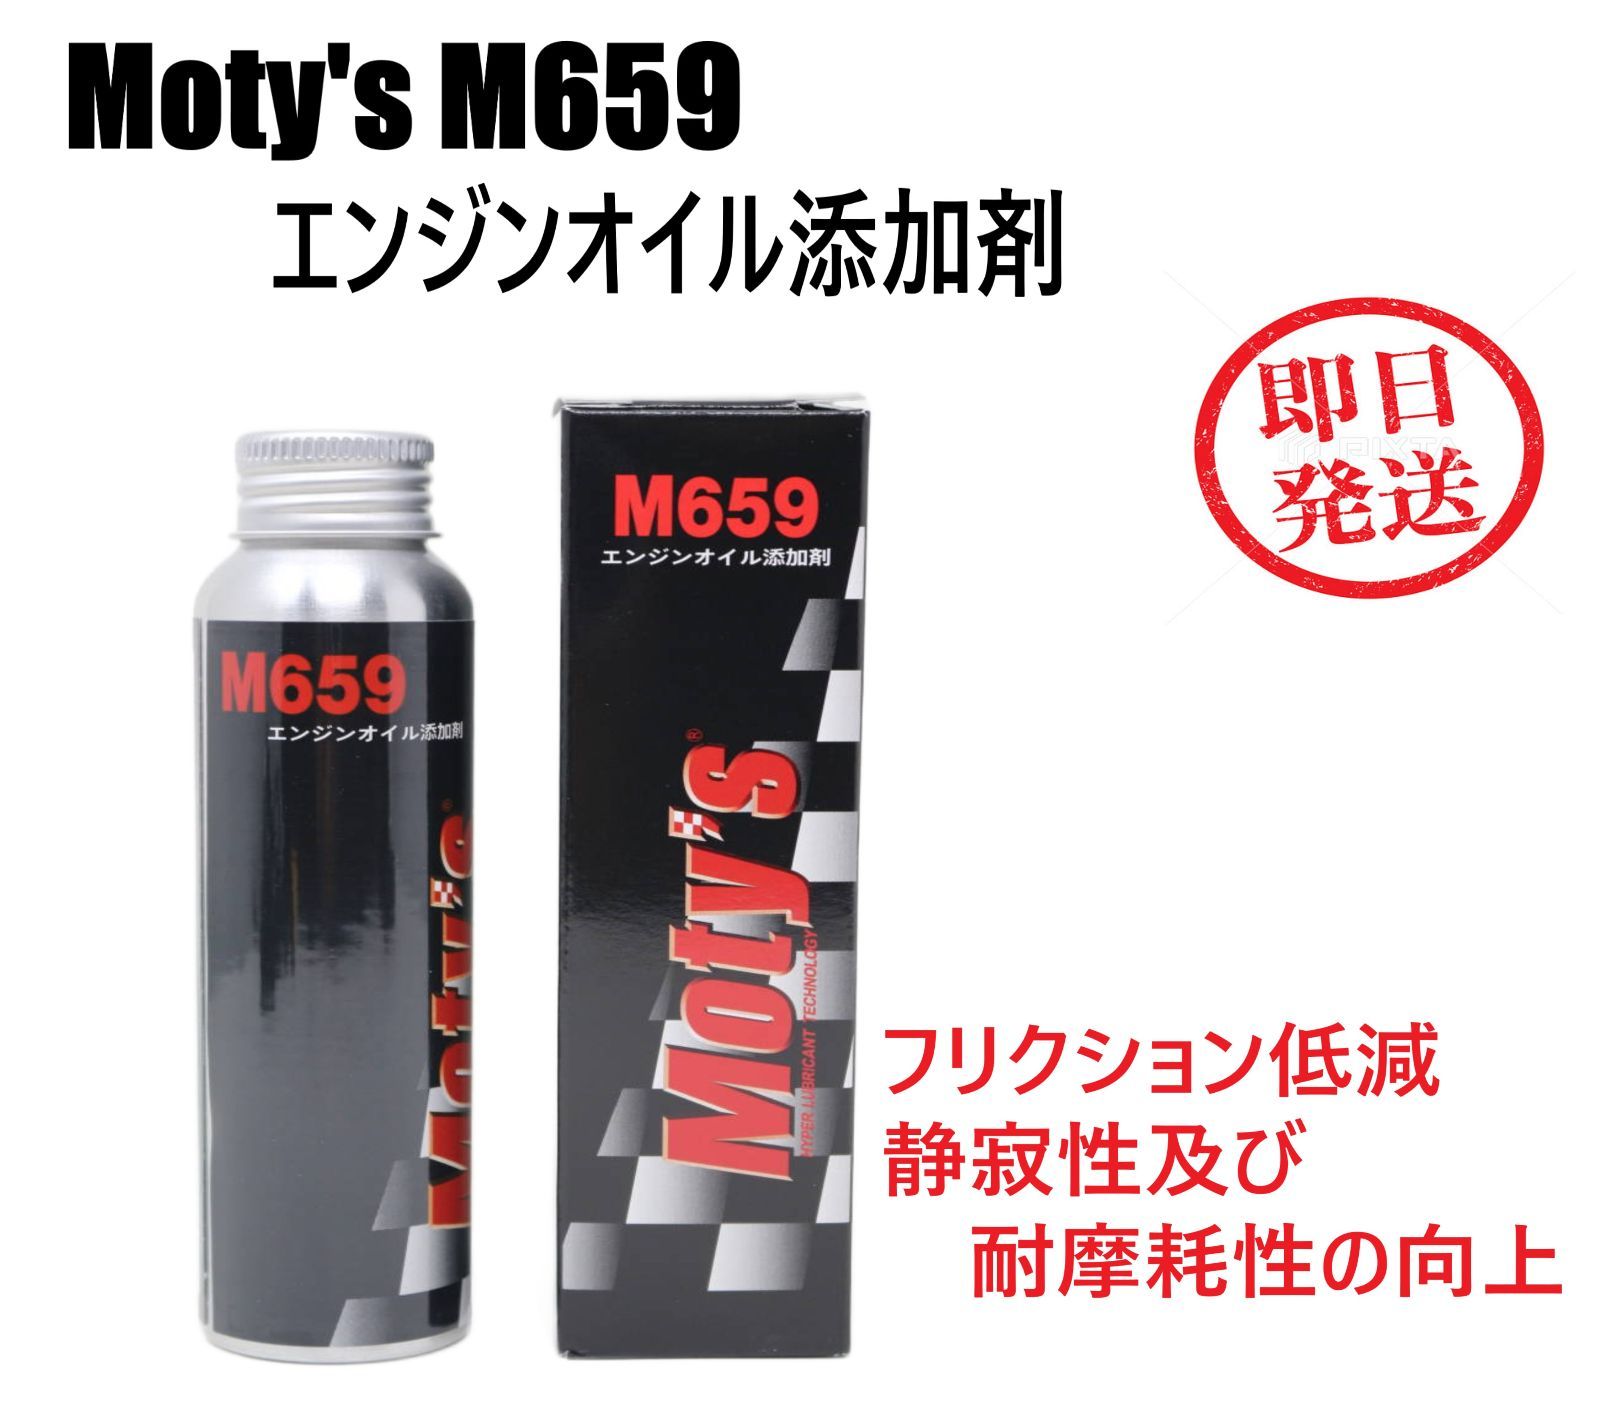 Moty's M659 エンジンオイル添加剤 モティーズ フリクション低減 耐摩耗 静粛性 低燃費 オイル モリブデン - メルカリ